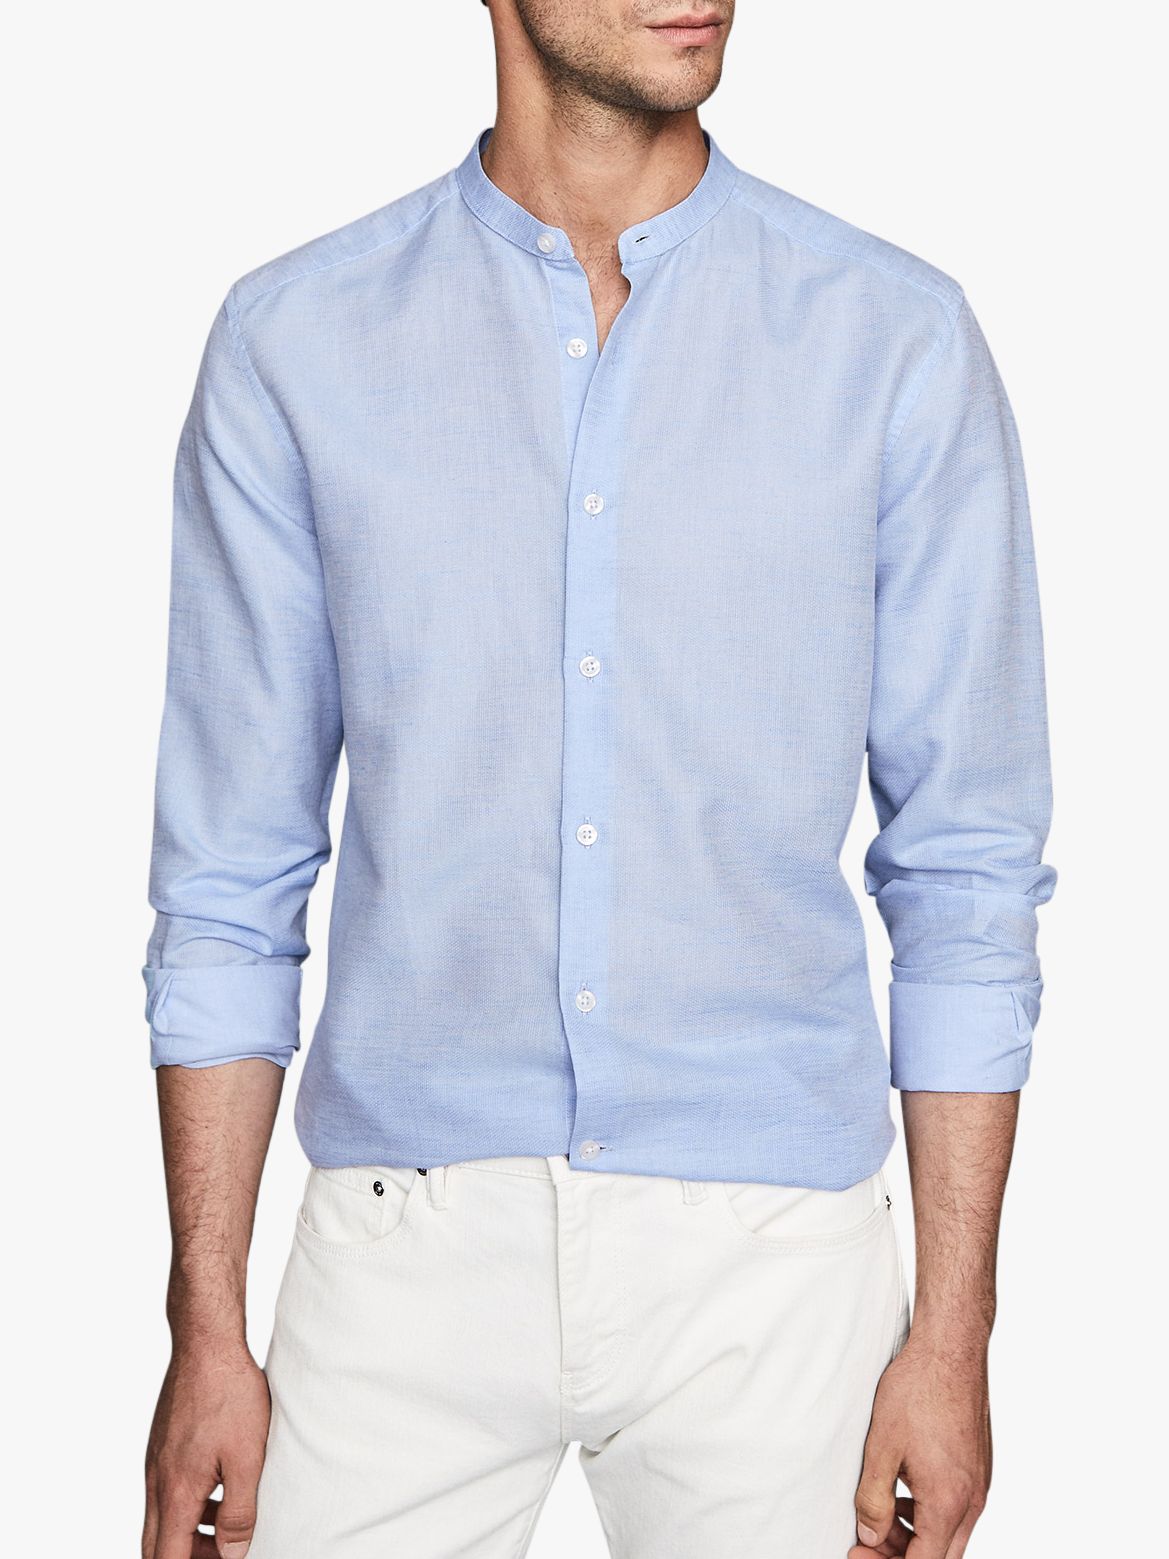 Reiss Casey Cotton Linen Grandad Shirt, Soft Blue at John Lewis & Partners